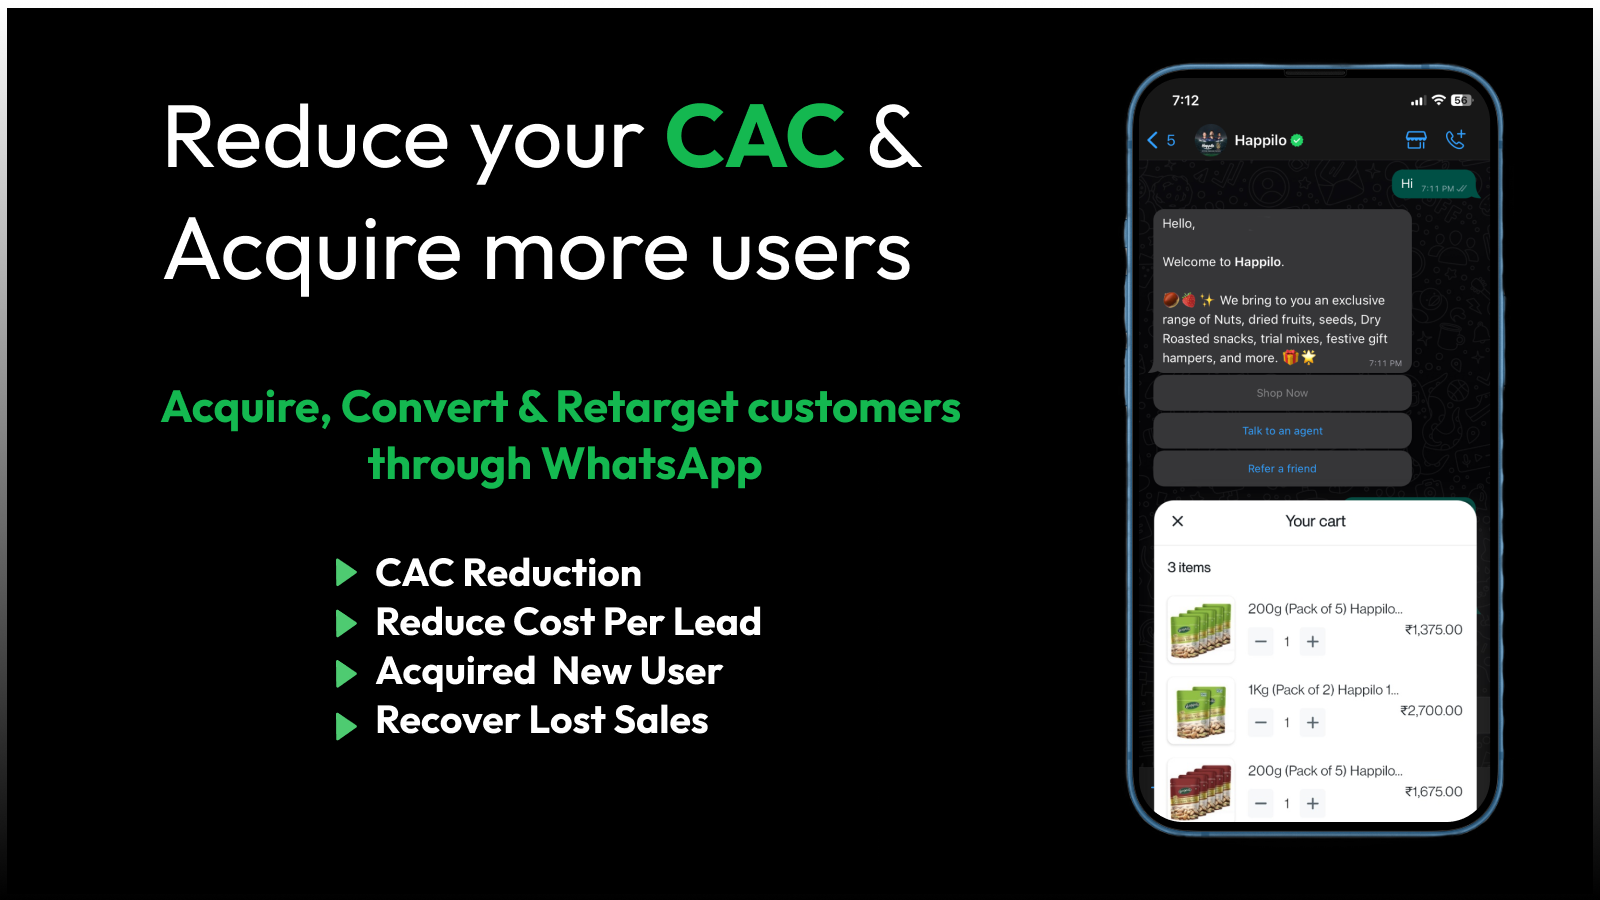 Reduza seu CAC e adquira mais usuários